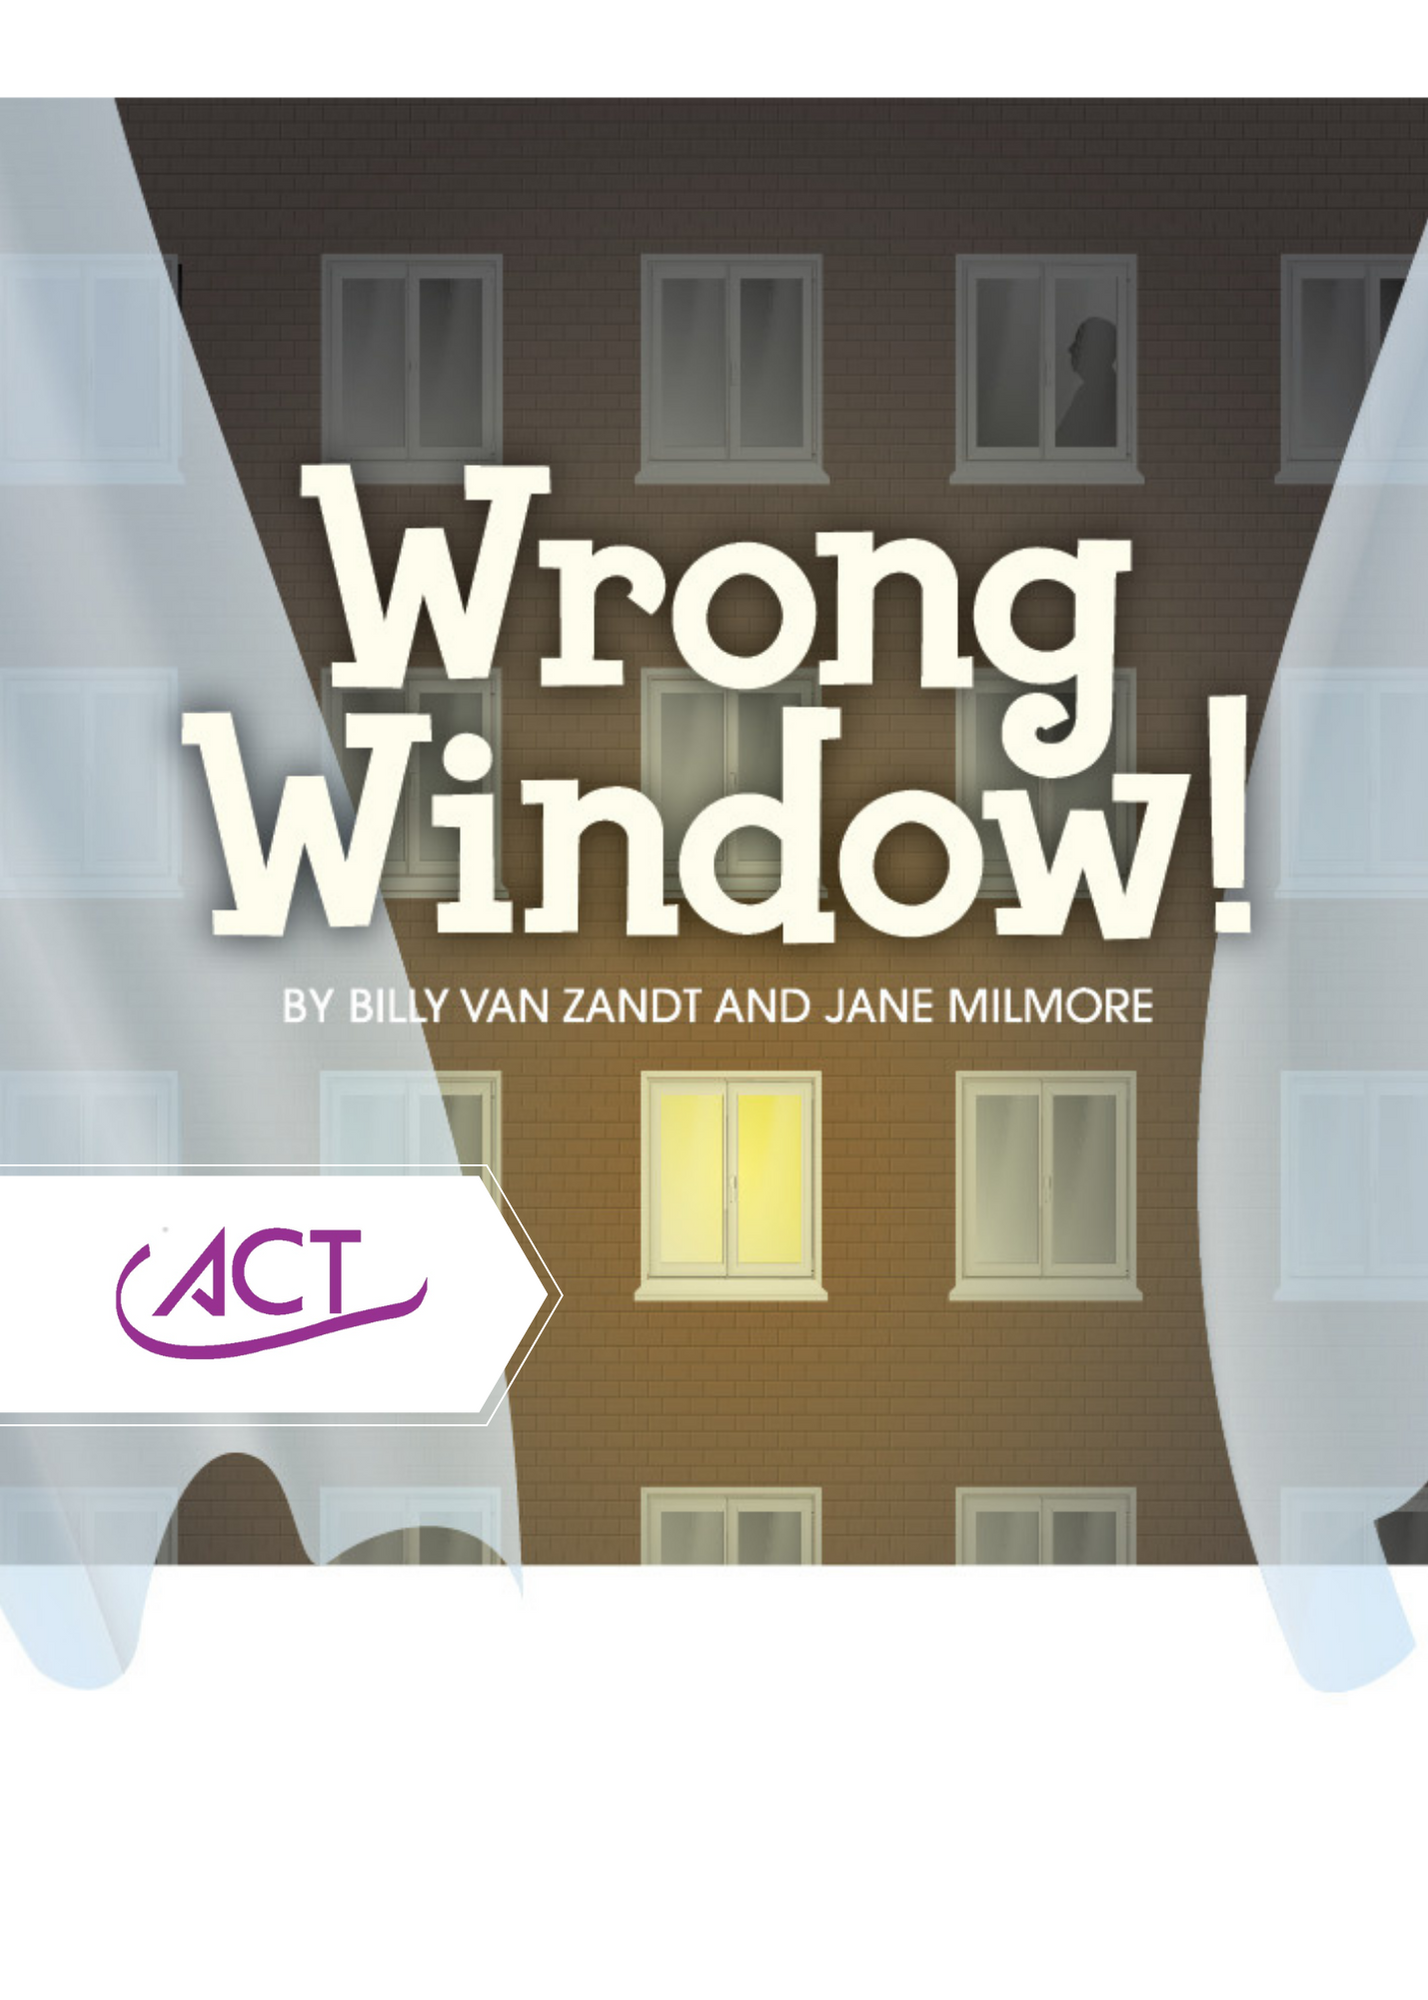 ACT - Wrong Window